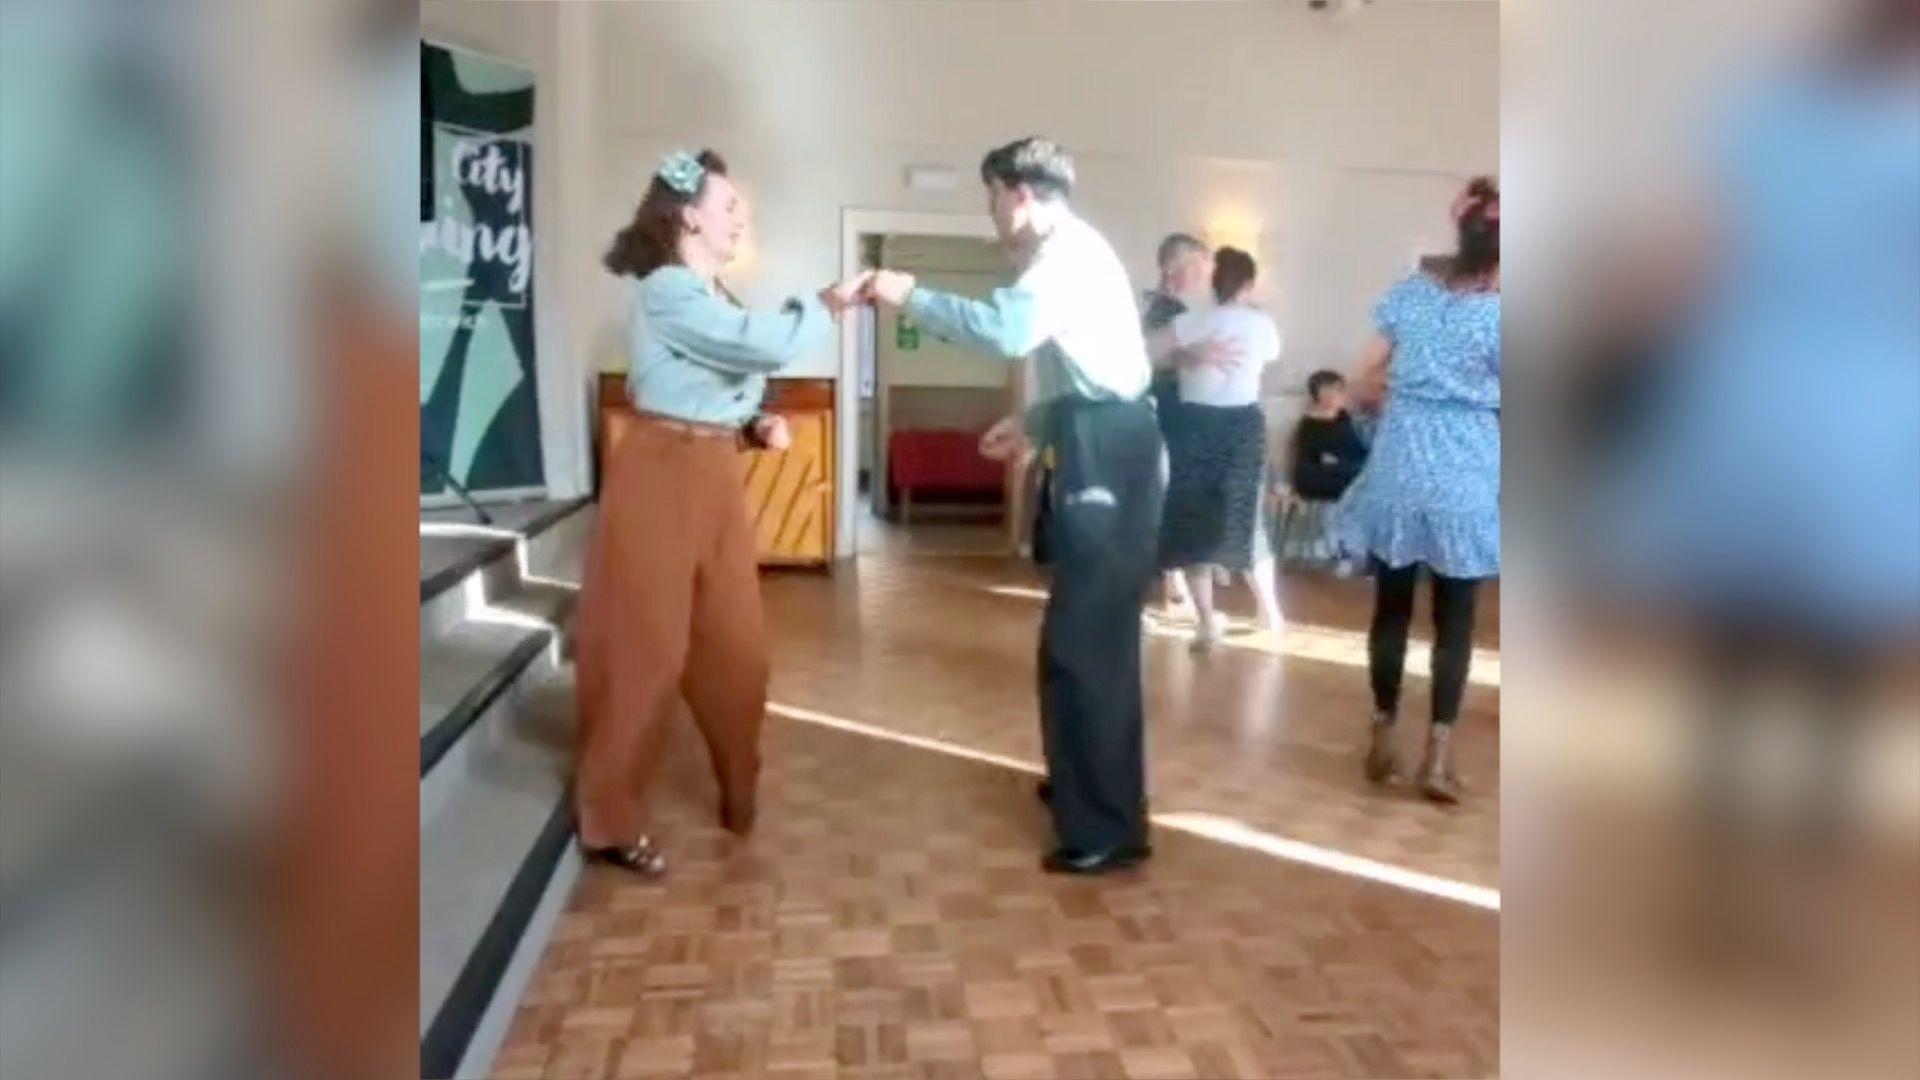 Liberty e Greg dançando com roupas tradicionais dos anos 40